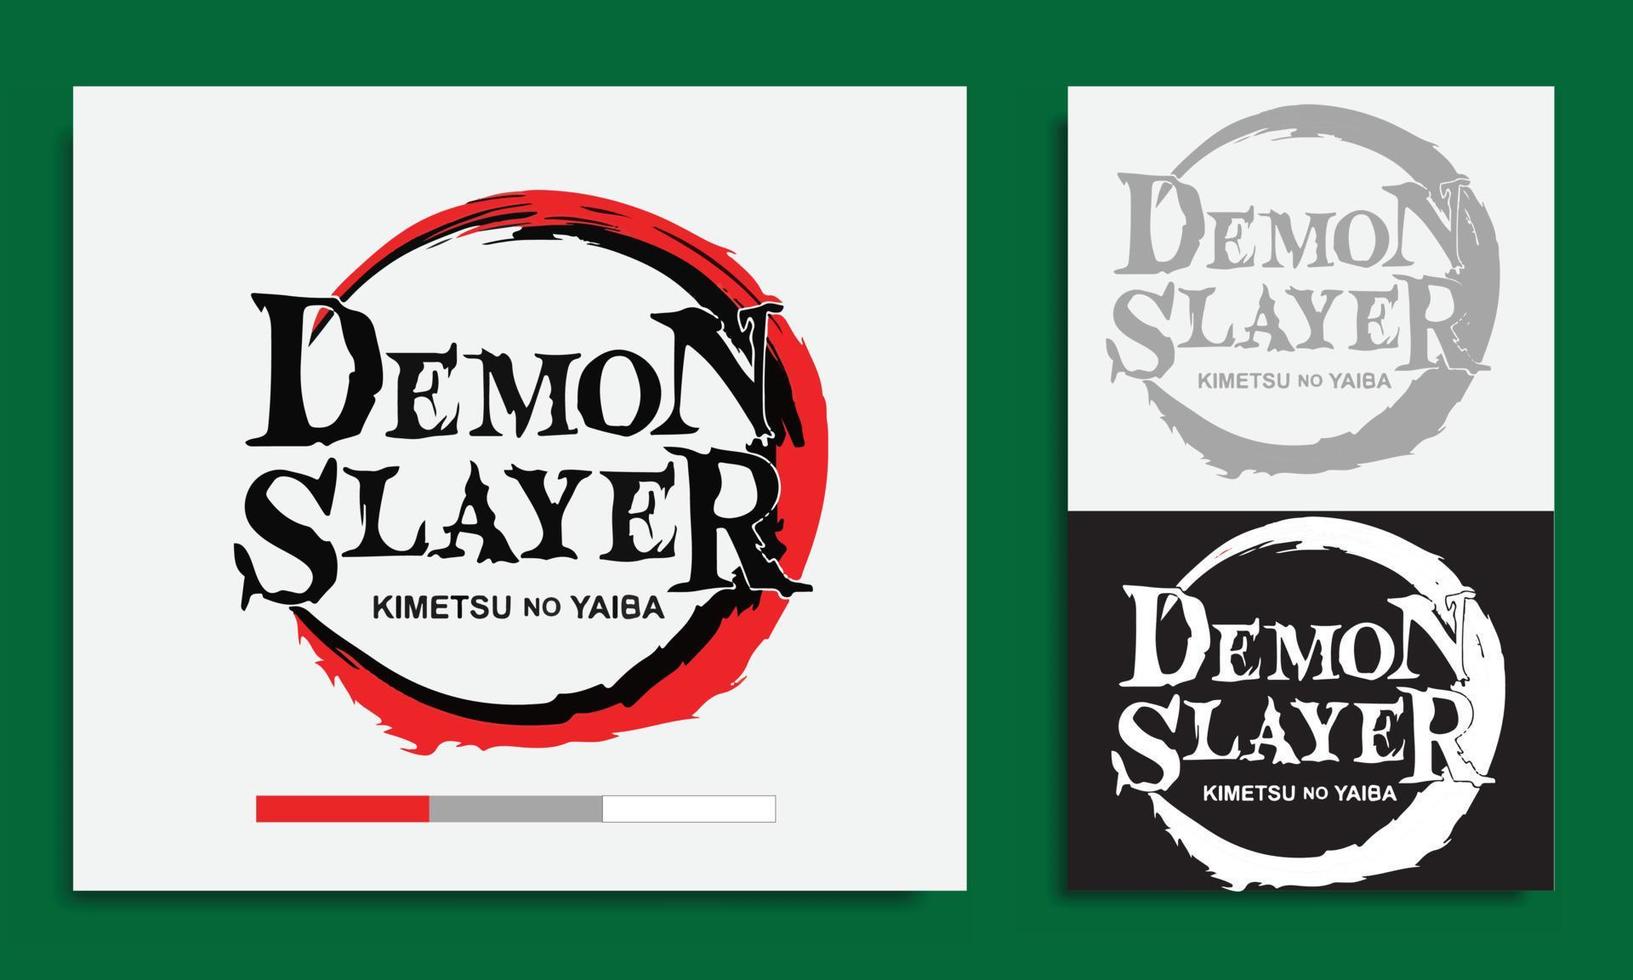 kimetsu no yaba o demone uccisore logo manga e anime isolato nel verde sfondo inglese versione vettore